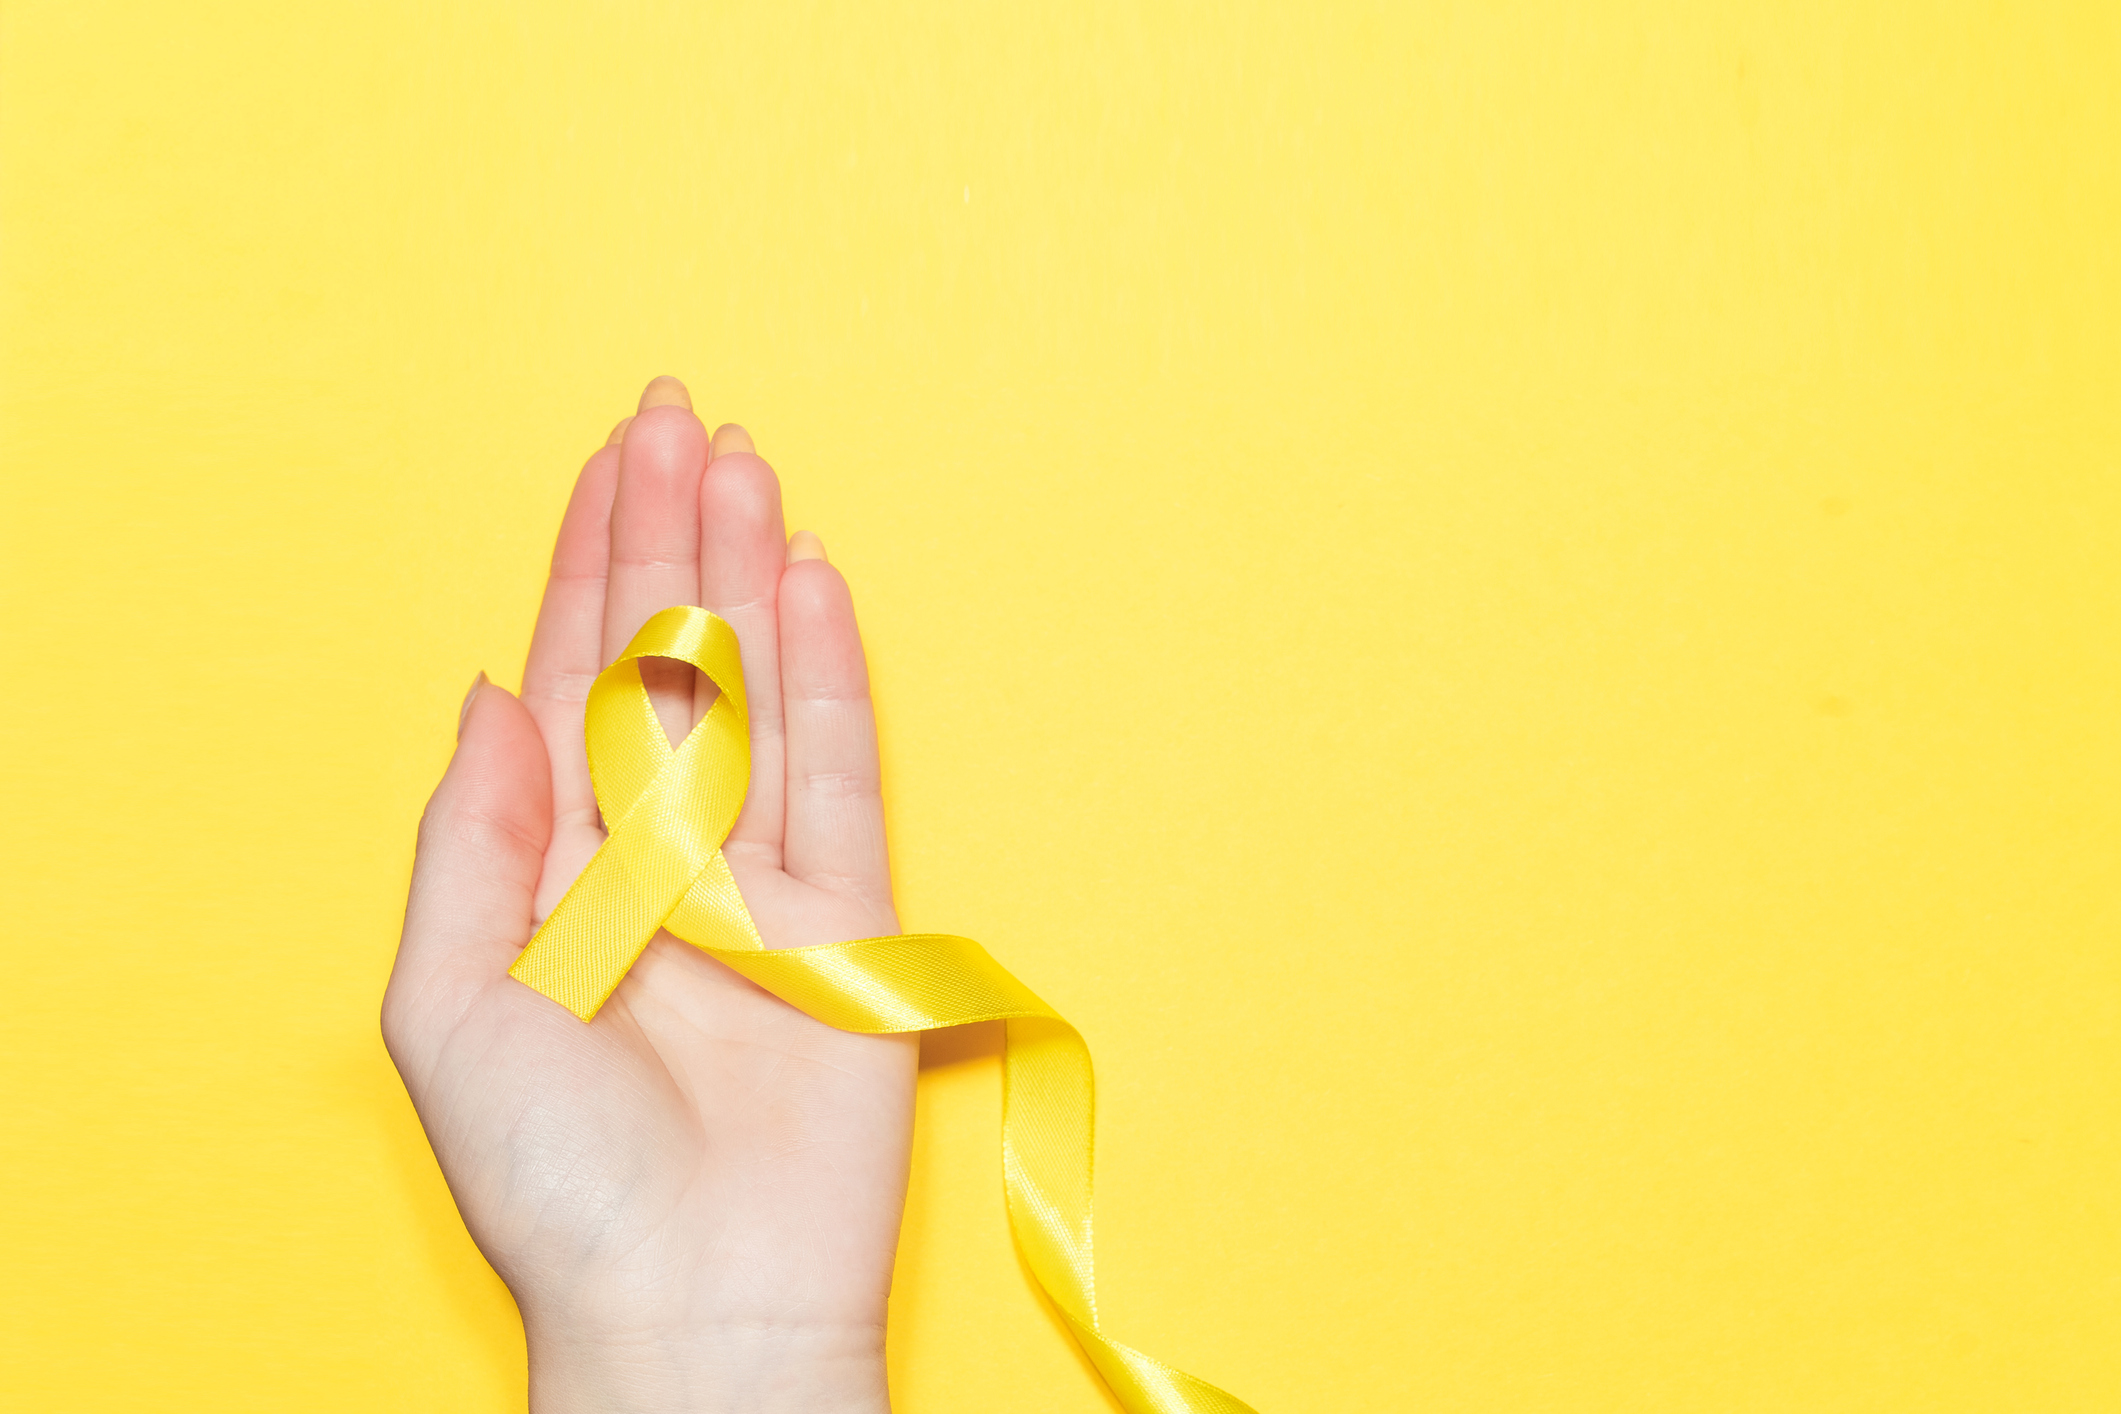 Setembro Amarelo: Campanha promove conscientização sobre prevenção do suicídio